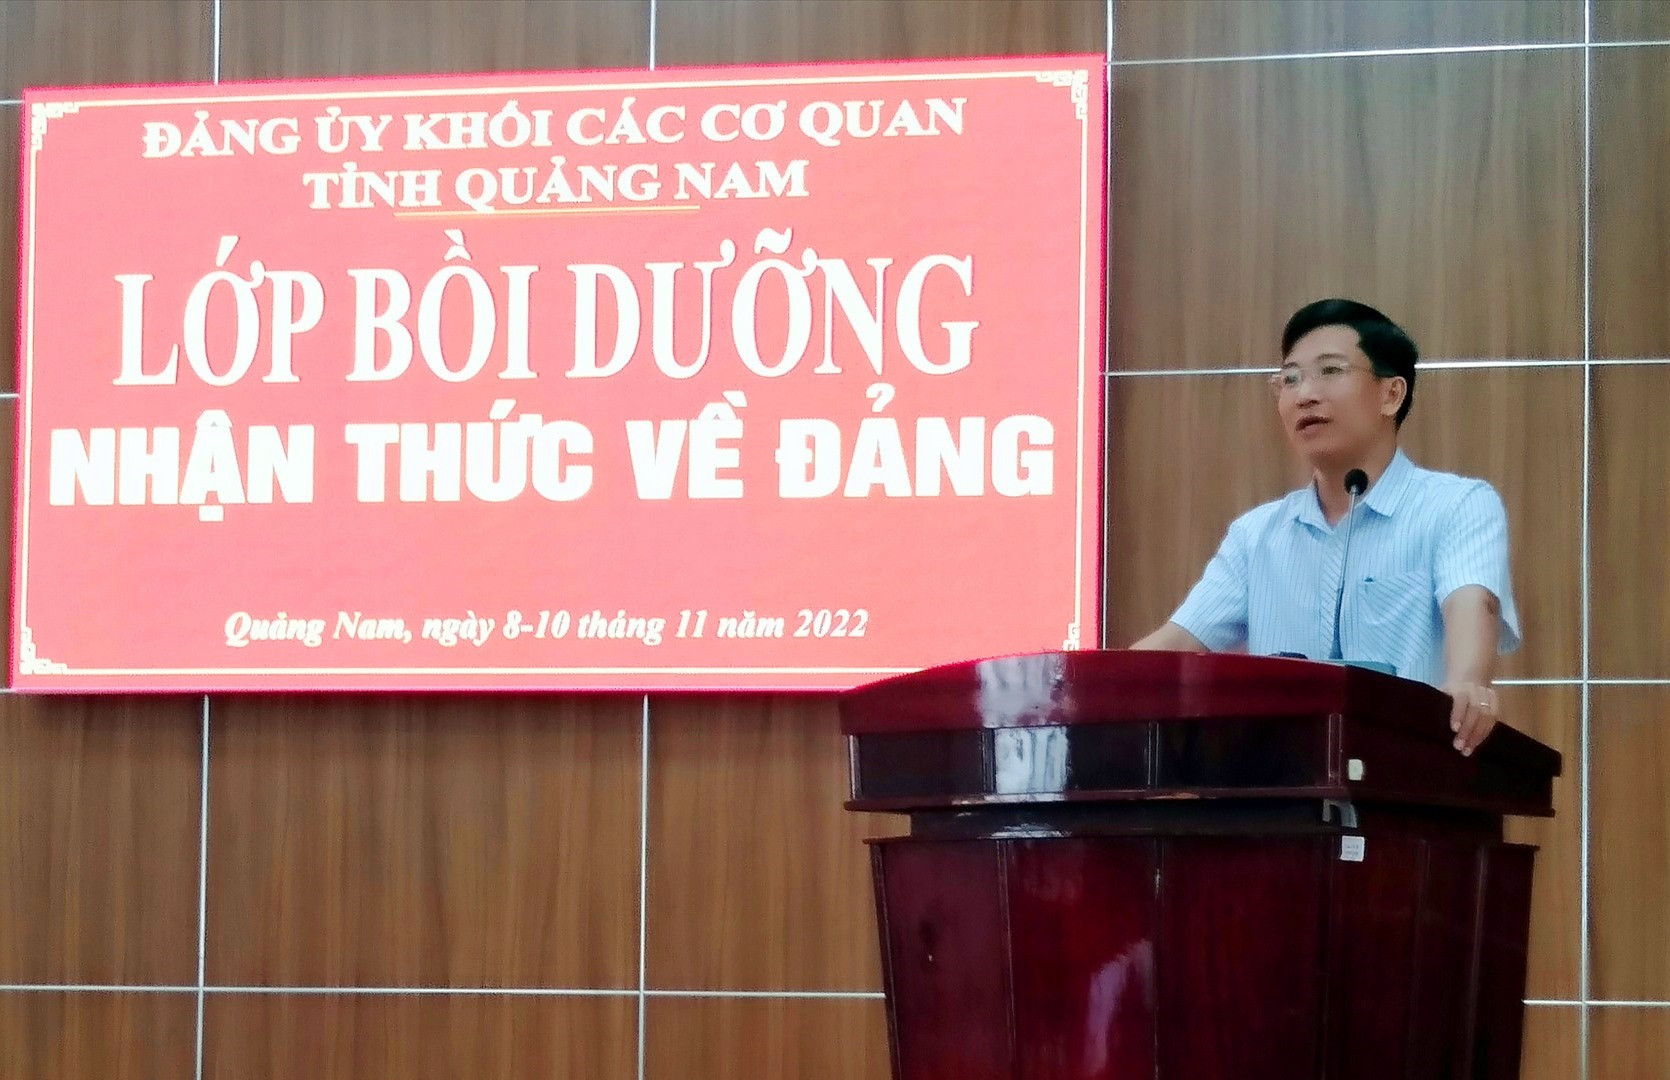 Ông Nguyễn Xuân Đức - Phó Bí thư Đảng ủy Khối phát biểu khai mạc lớp học.